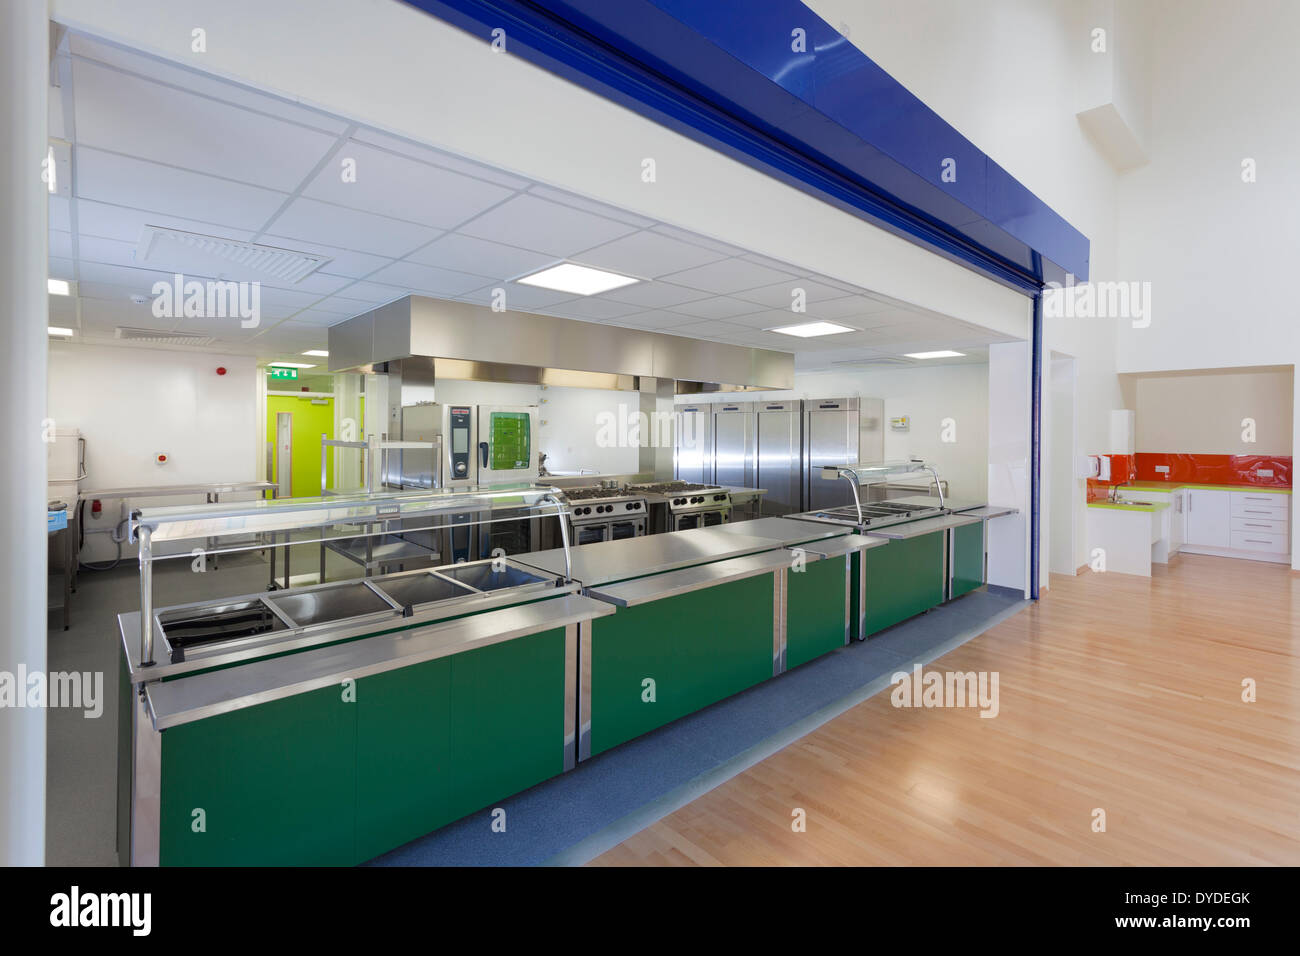 New primary school kitchen servery. Stock Photo